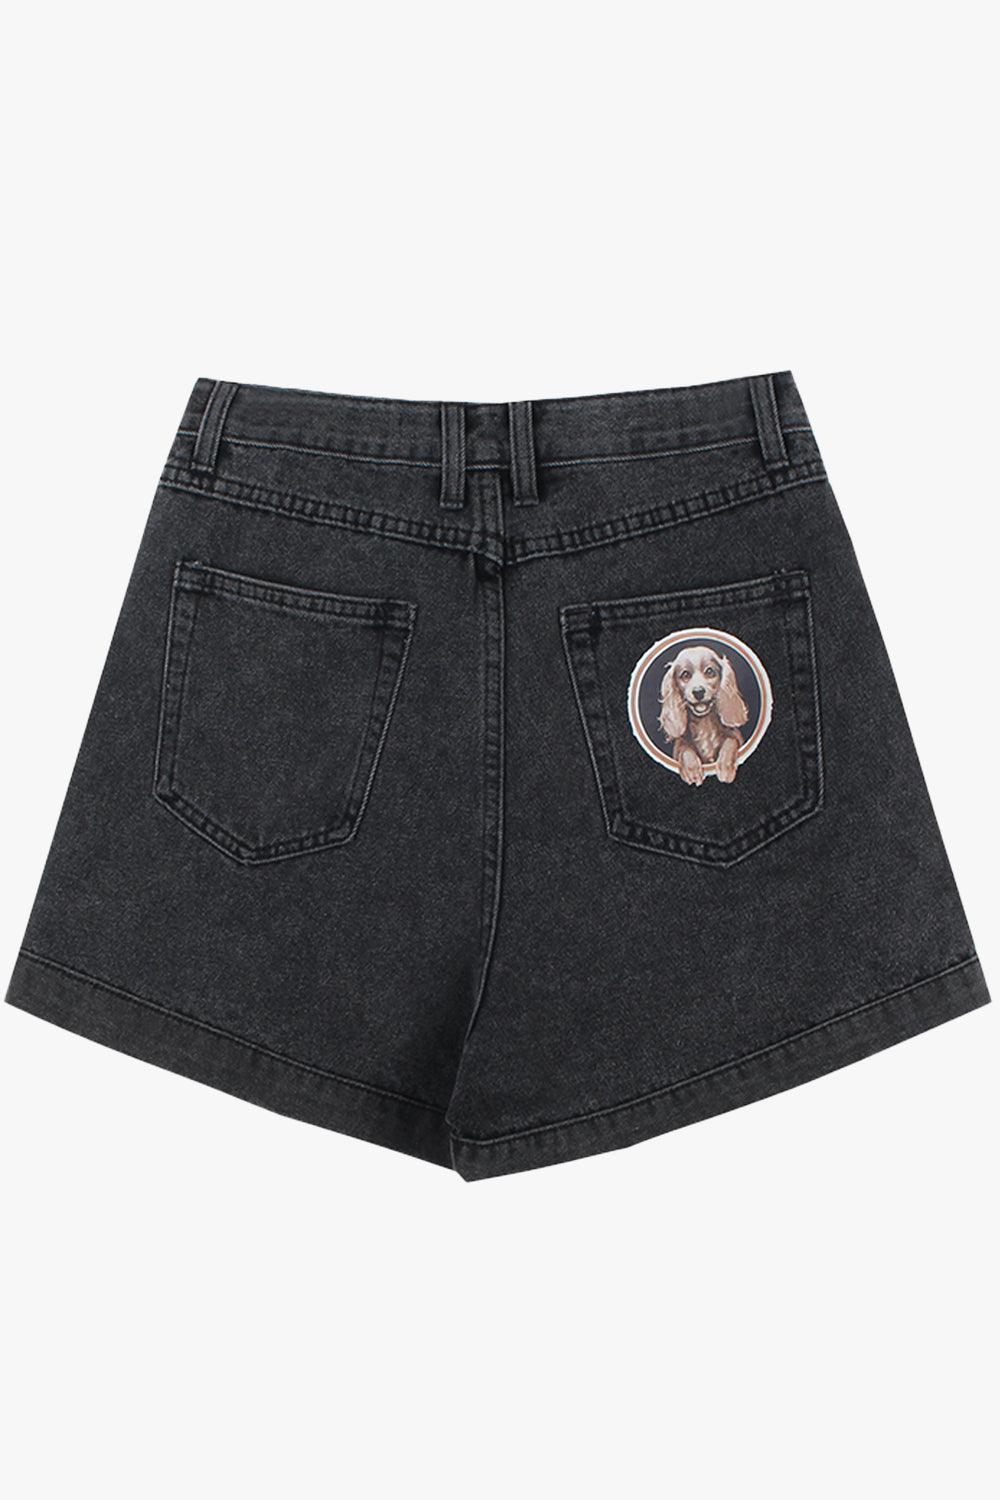 Black Vintage Shorts Back Pocket Dog Patch - Aesthetic Clothes Shop